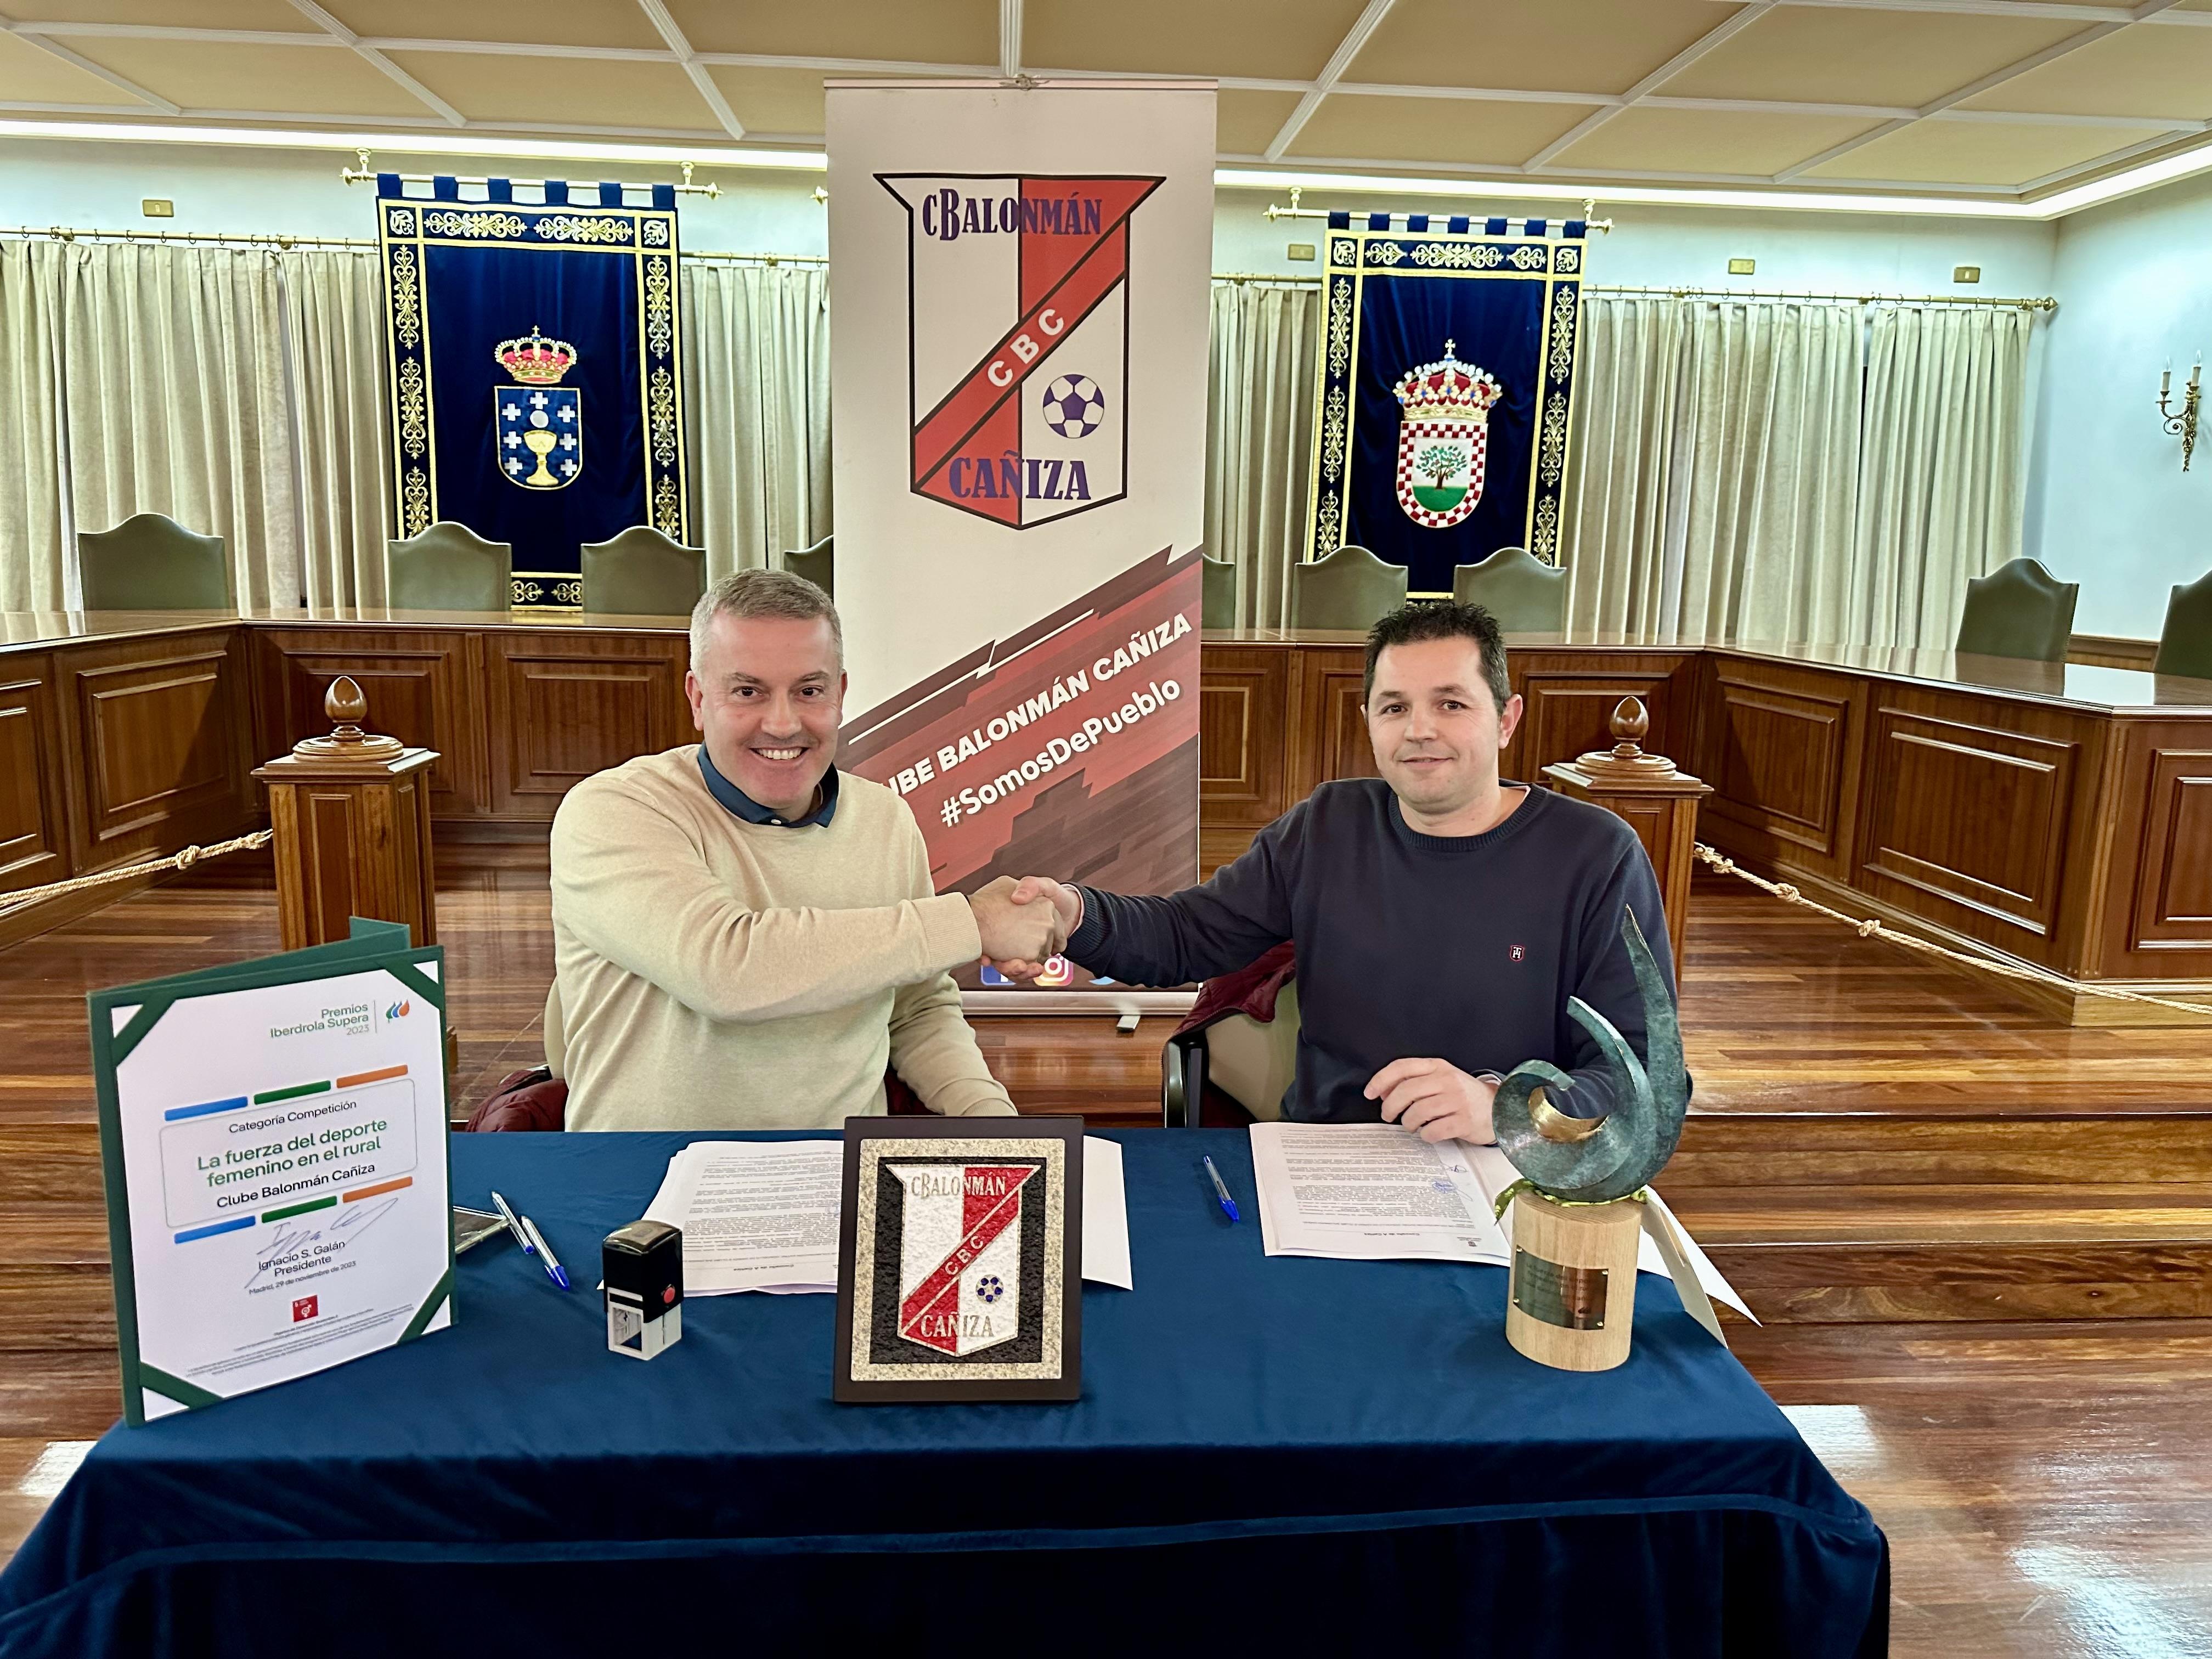 Concello e Club Balonman Cañiza renovan confianza e compromiso de colaboración mutua.